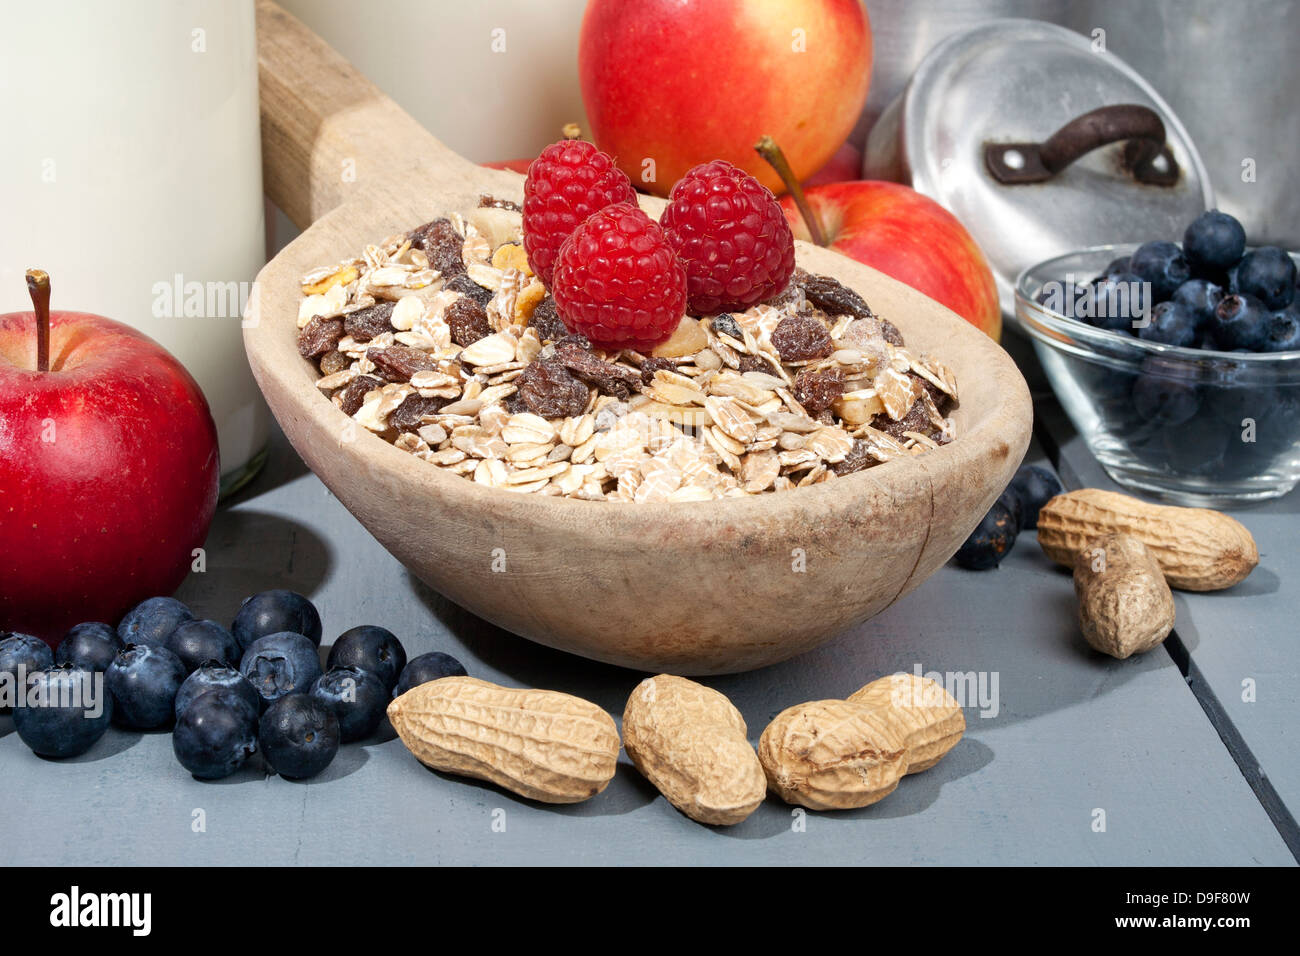 Paleta de madera con cereales con frutas y leche, cuchara de madera con cereales con fruta y leche Foto de stock